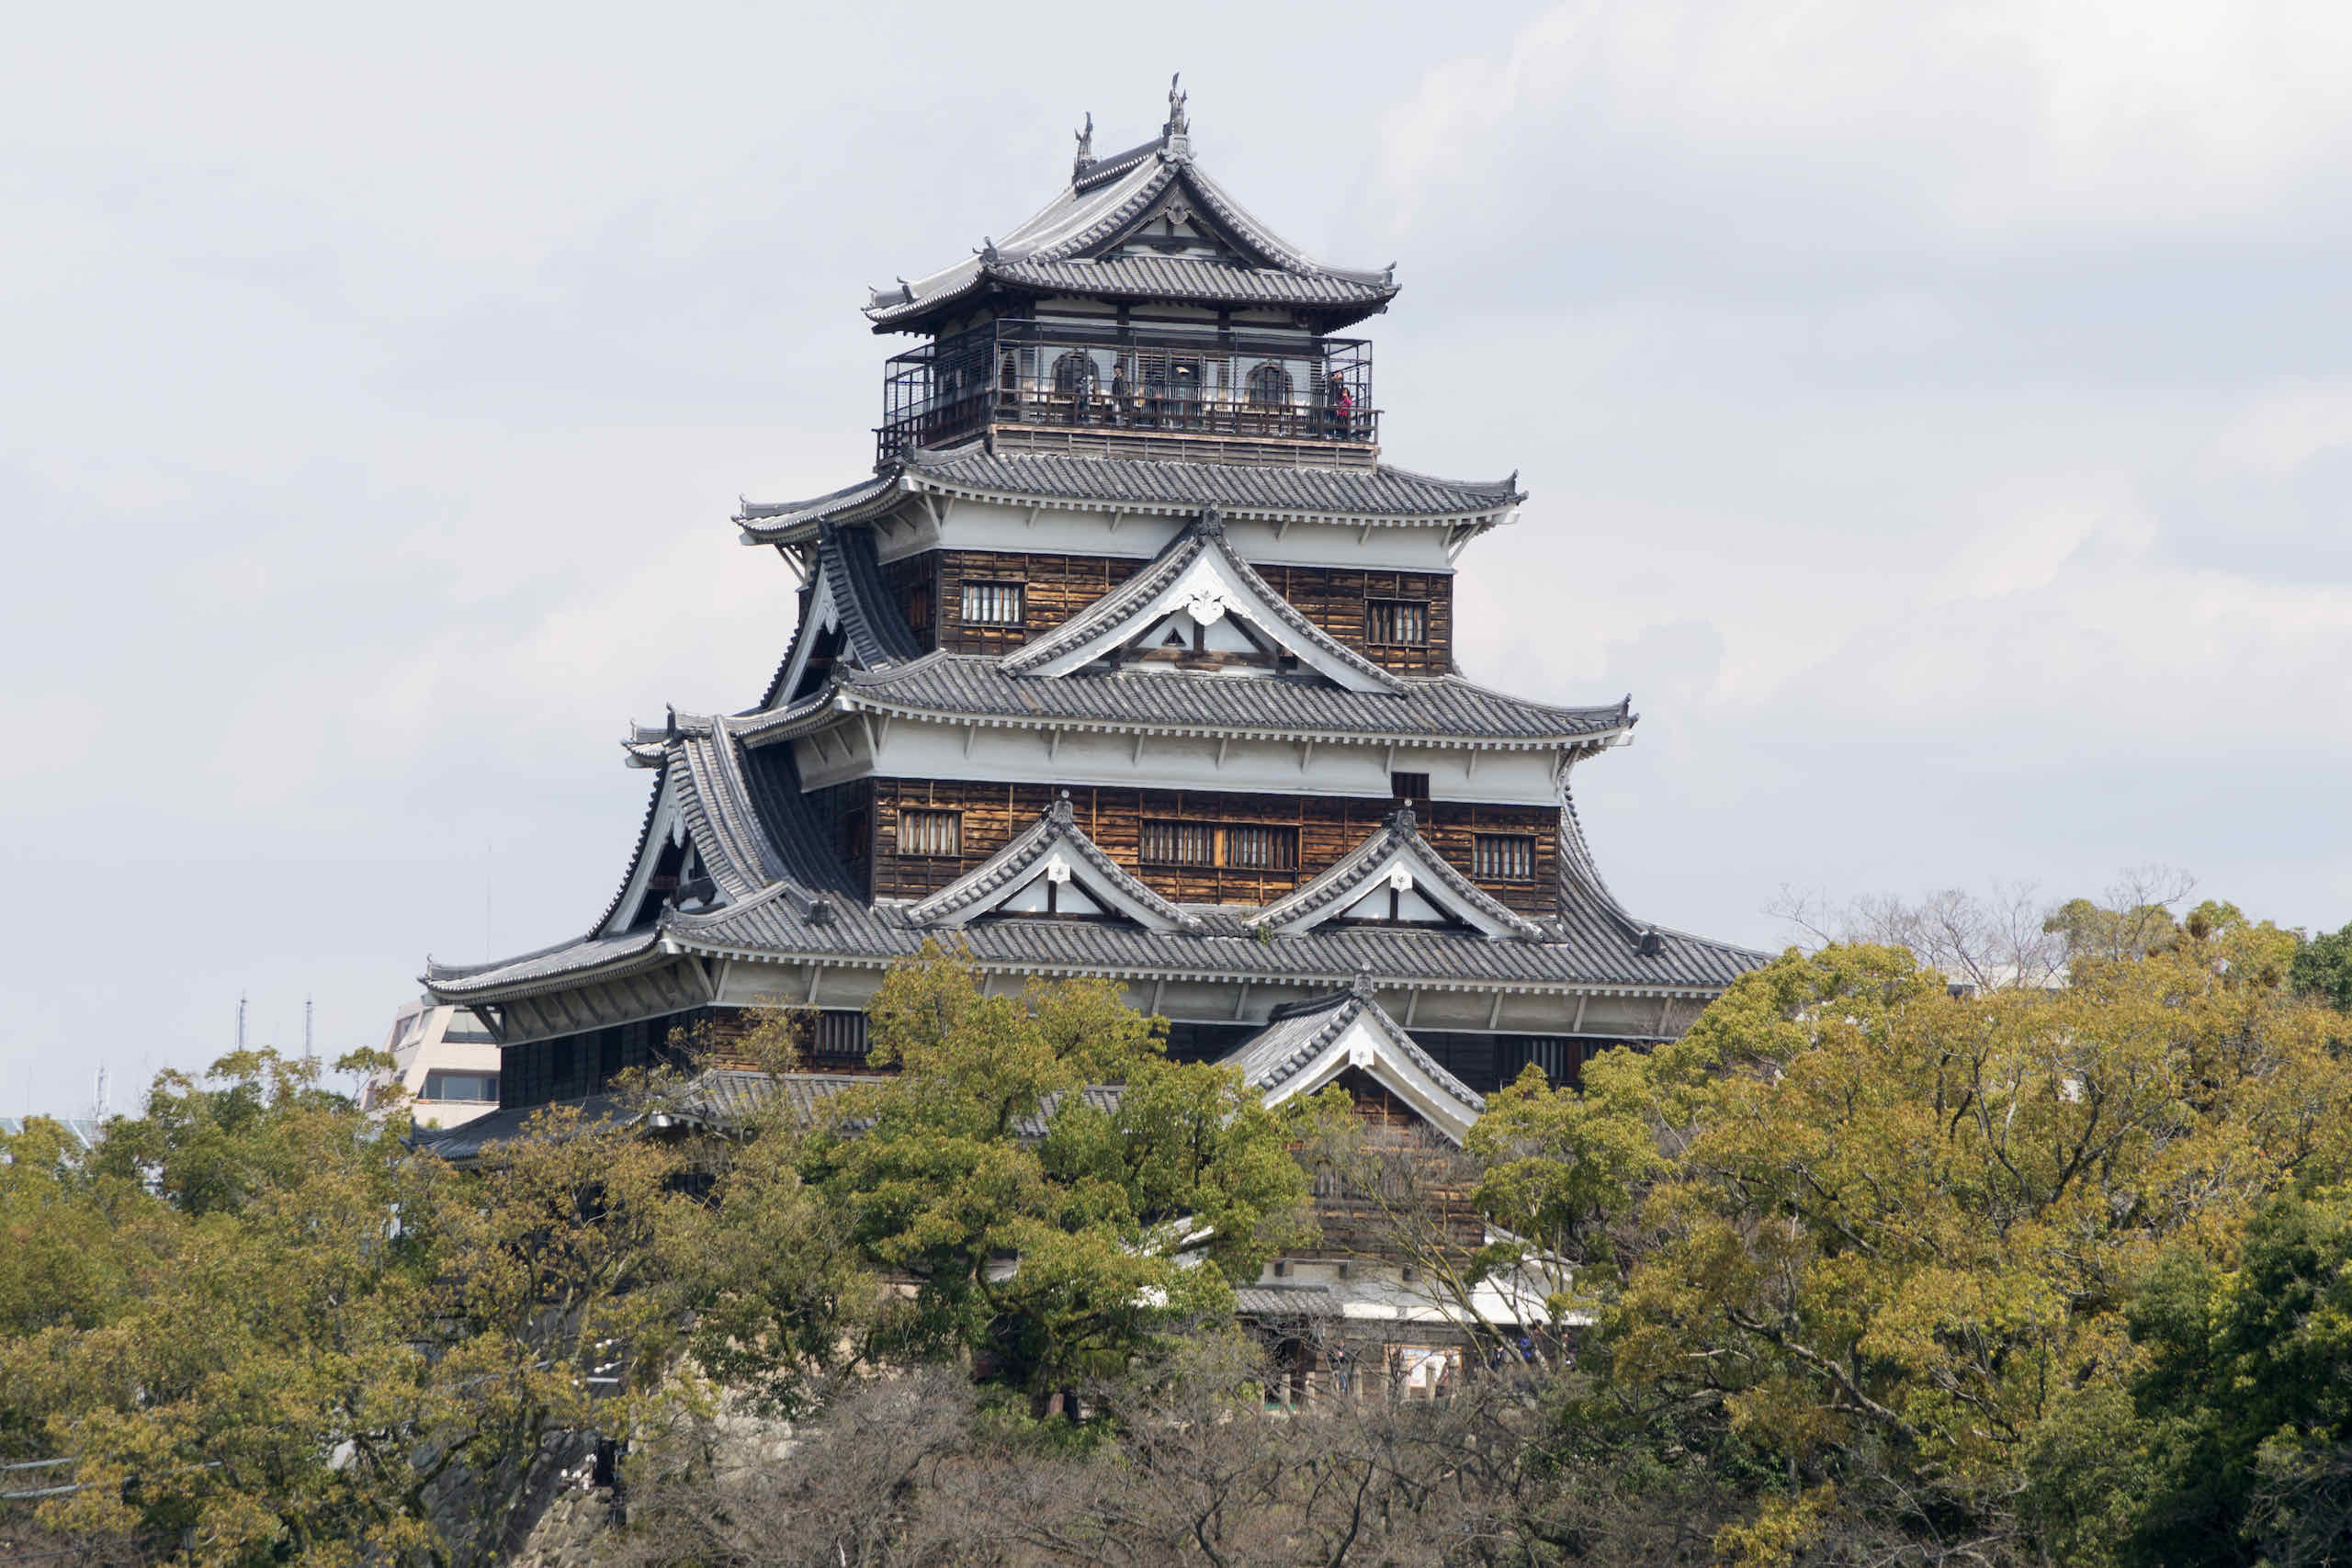 hiroshima castle